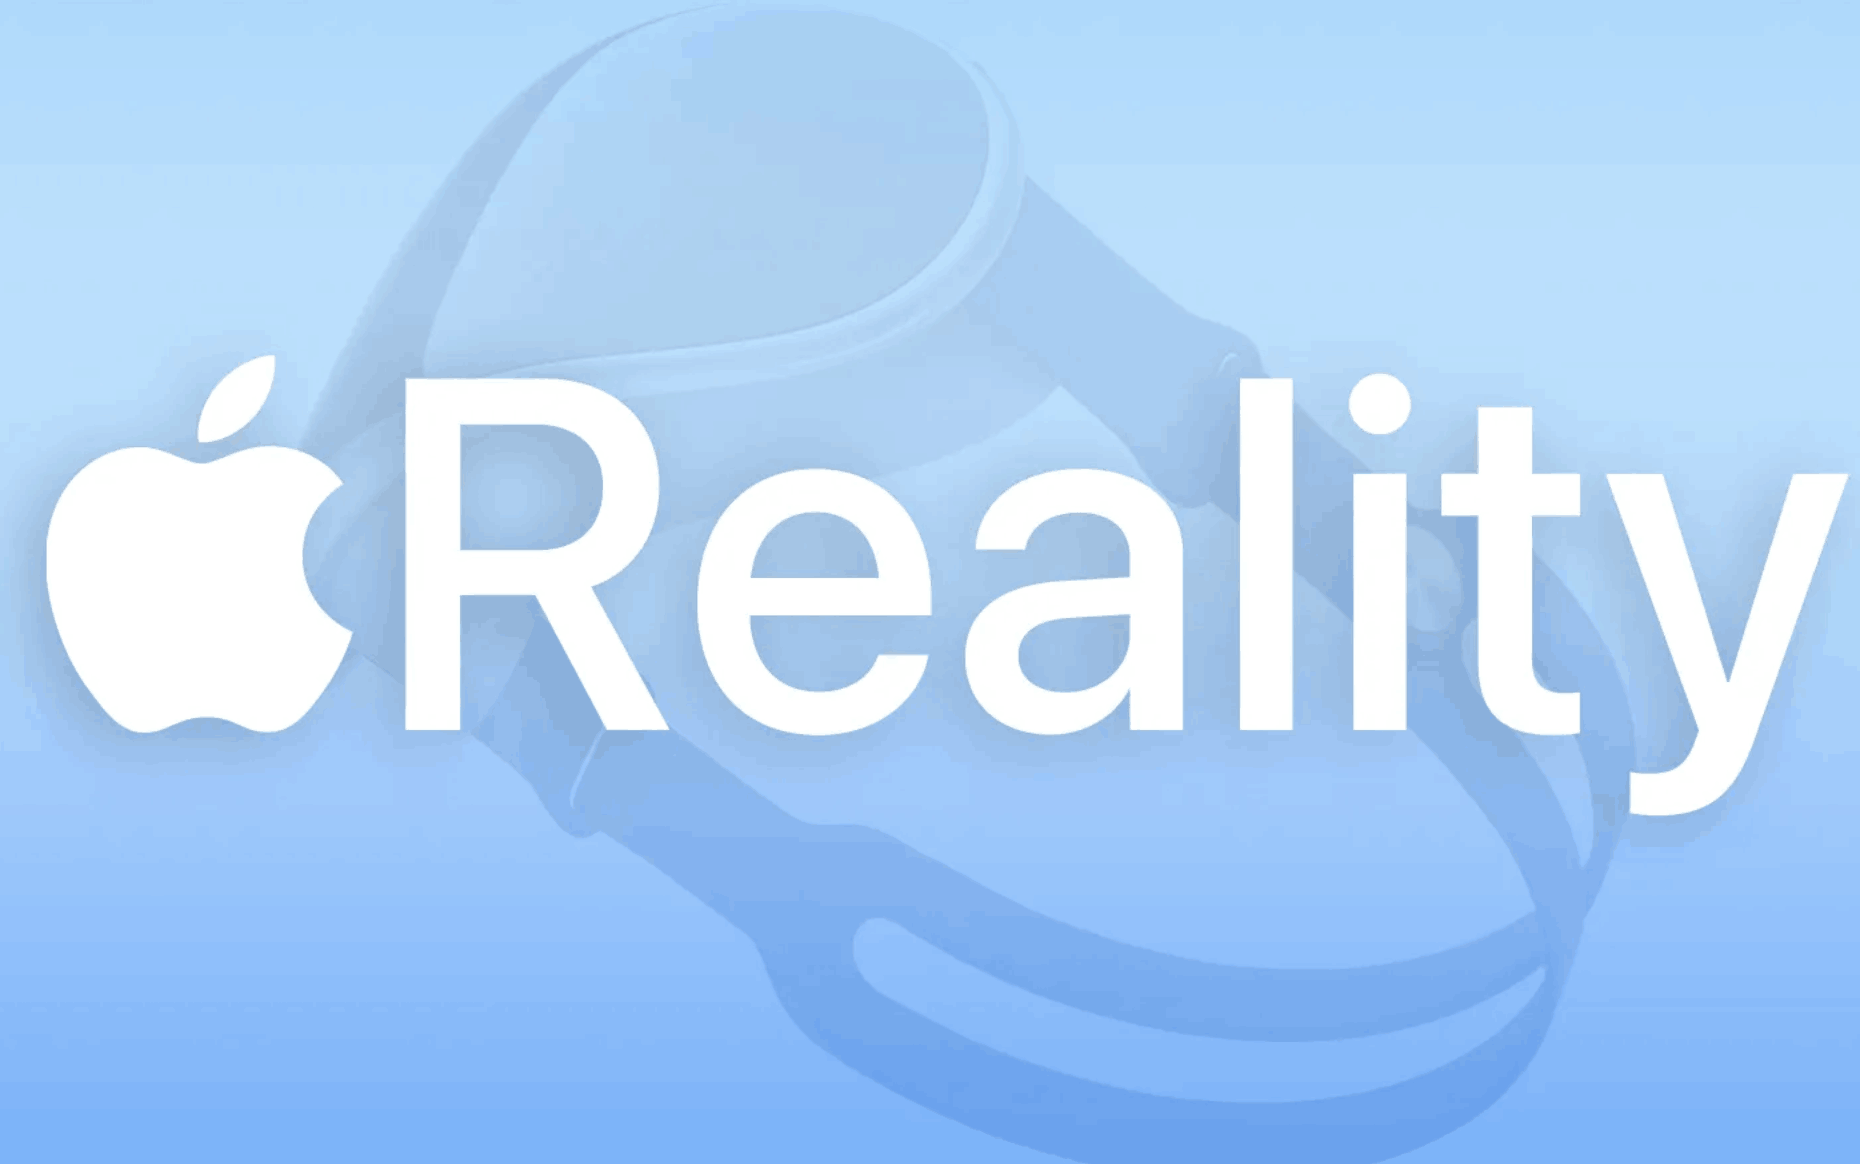 苹果首款 VR 头显爆料汇总：售价 1.5W，M1 Pro 性能，8K 屏